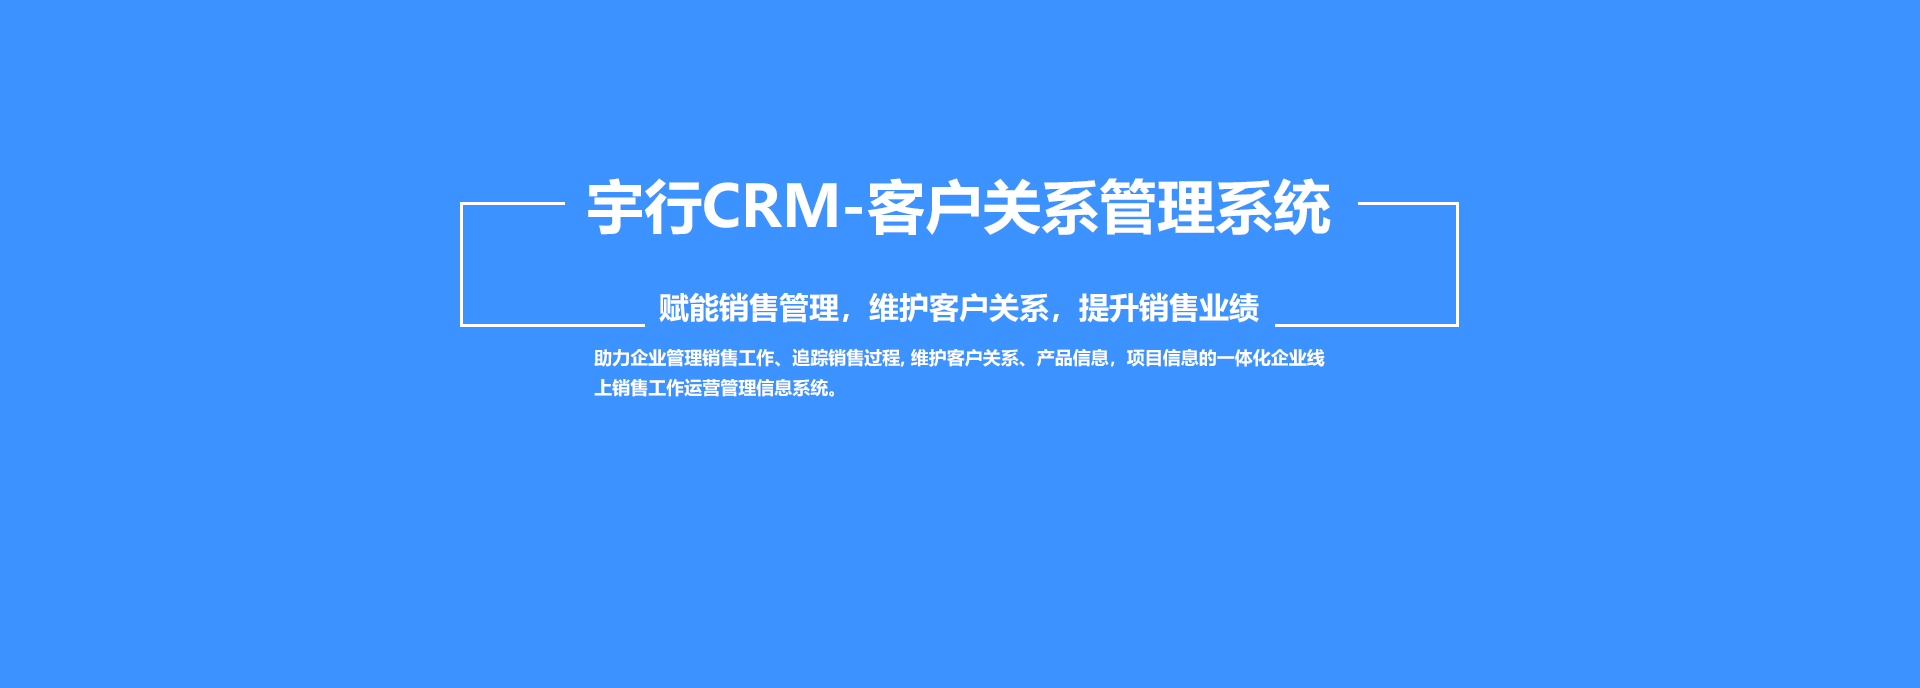 宇行CRM客户关系管理系统